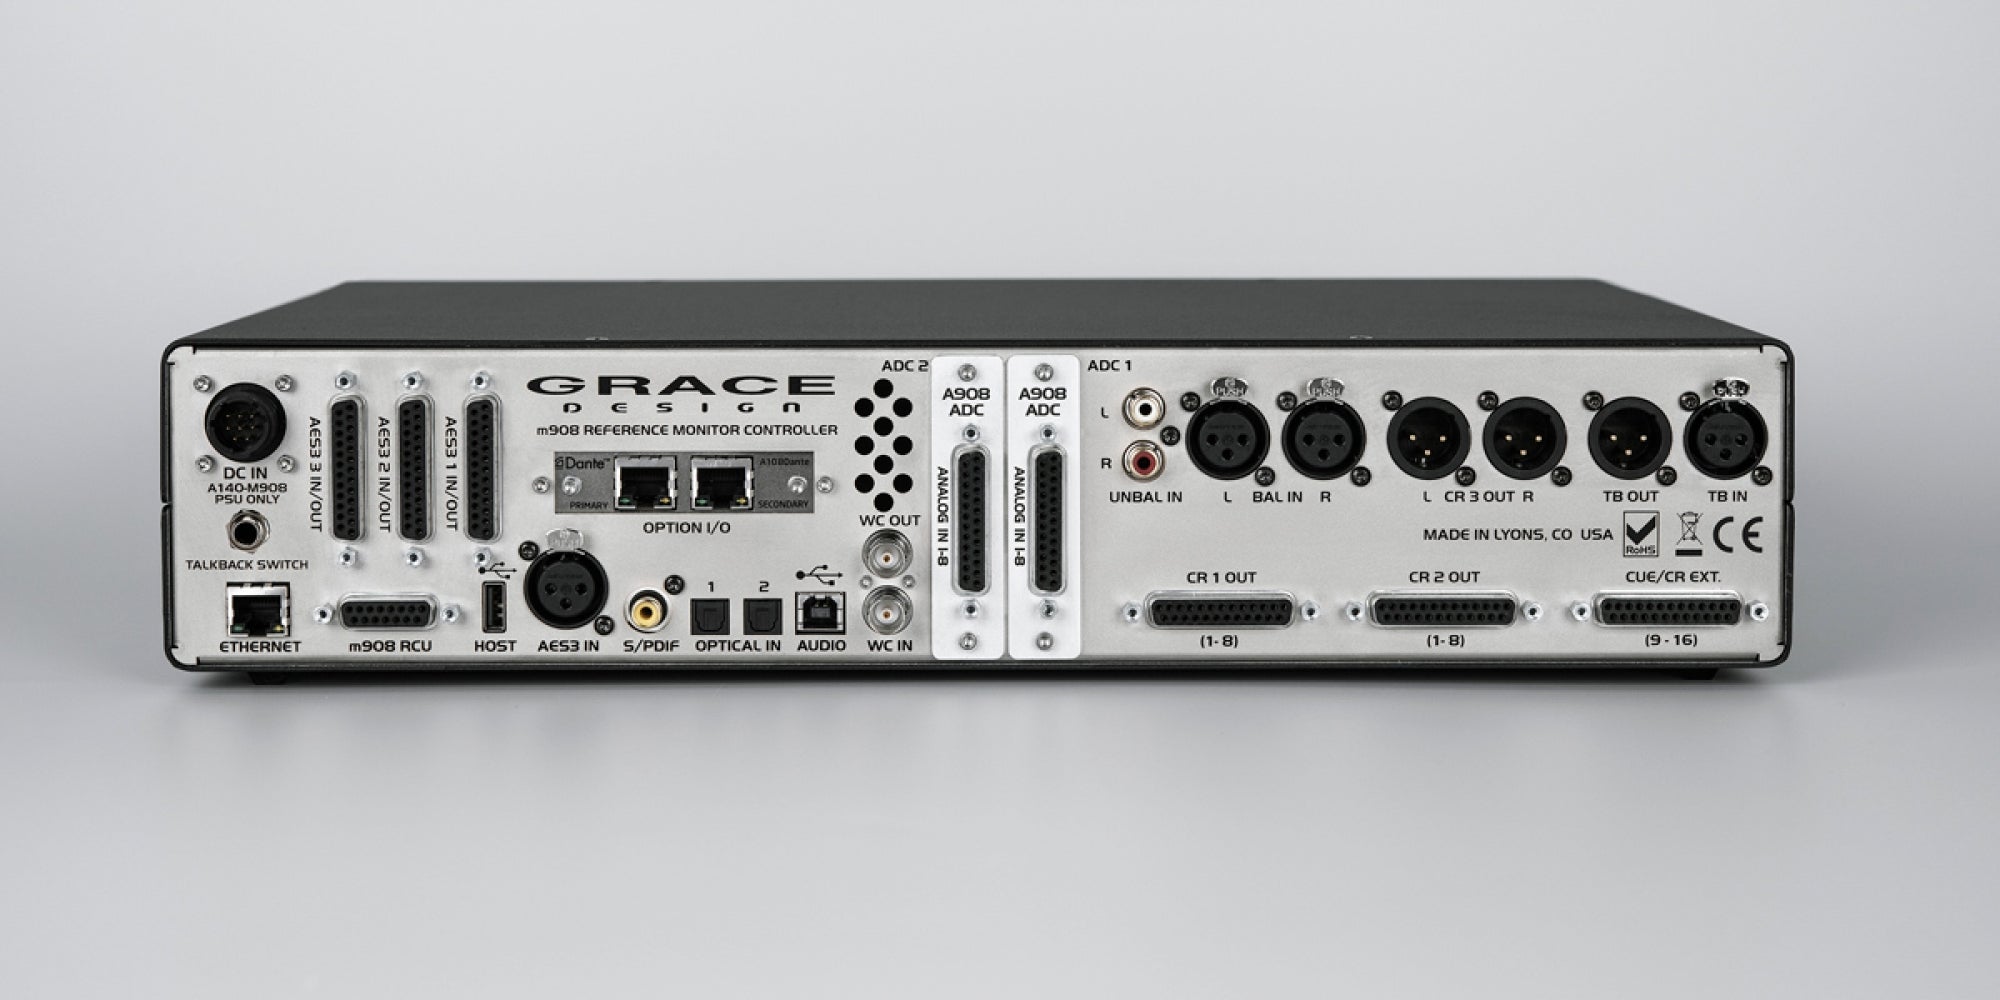 Grace Design m908 Surround/Multi-Channel Monitor Controller - Monitor Controller - Professional Audio Design, Inc